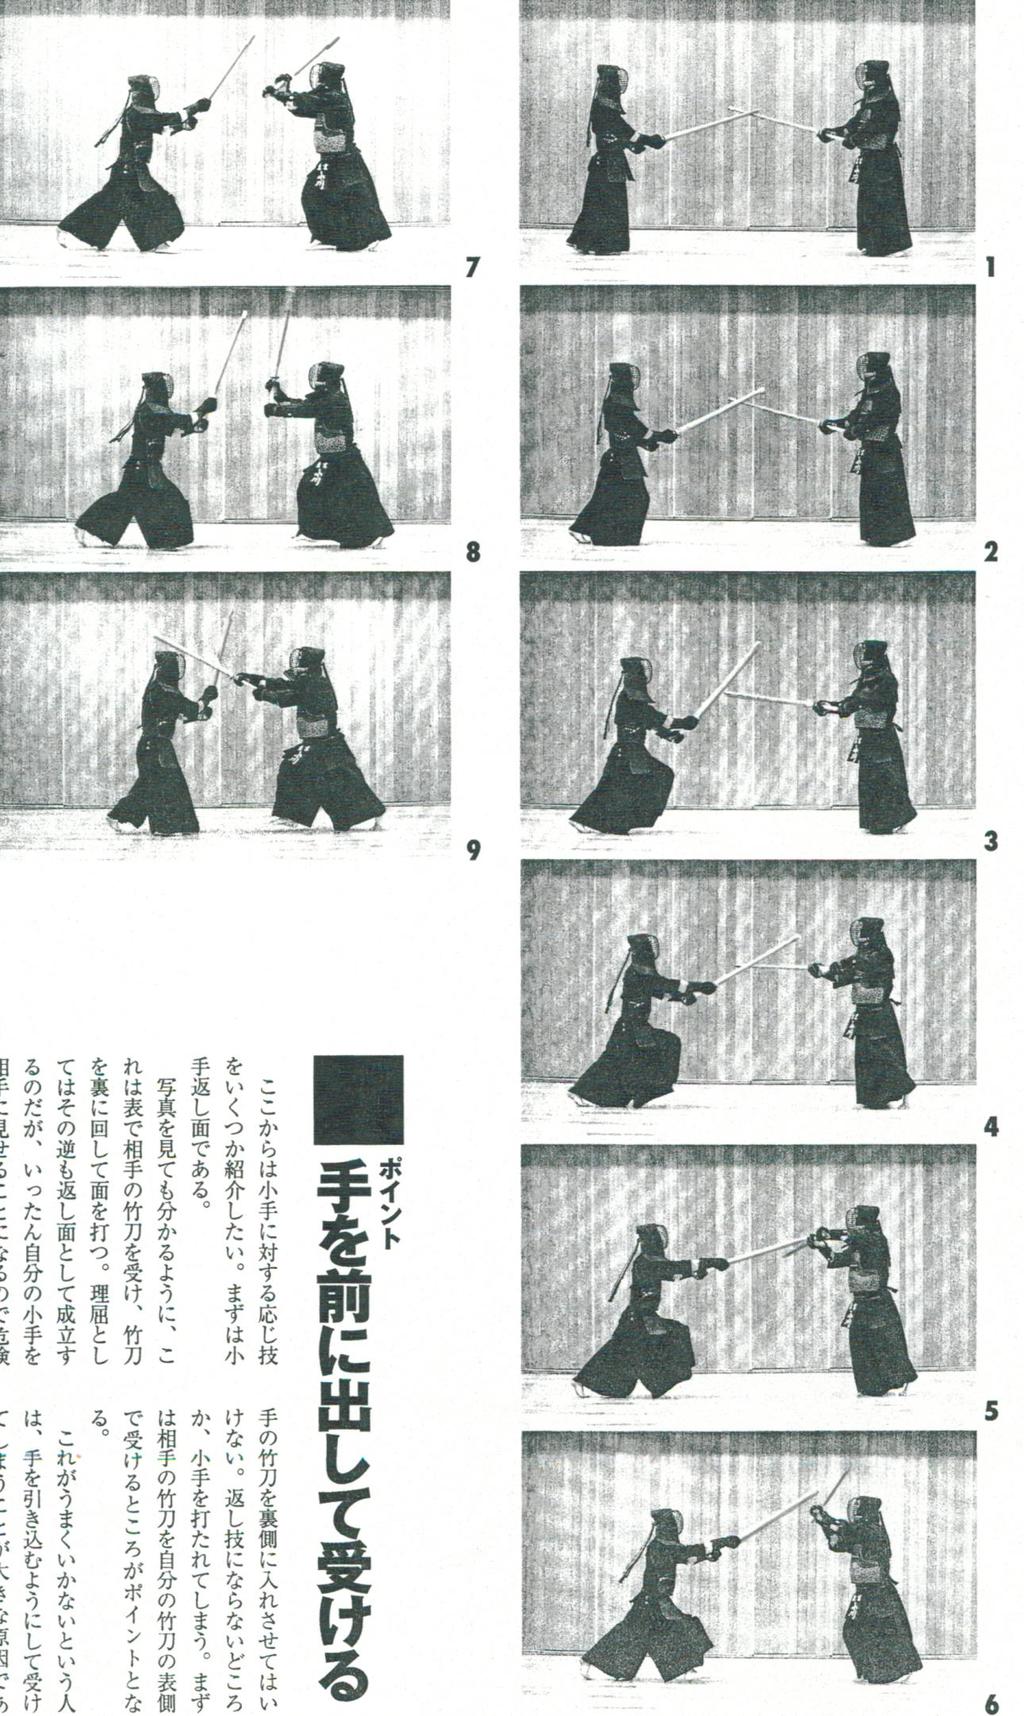 KENDO CLSSROOM ( 剣道教室 ) for Wining Kendo Ōji Waza - Men Page 7 of 15 Kote-Kaeshi Men (Kaeshi Men against Kote) Kote-Kaeshi Men ( 小手 - 返し面